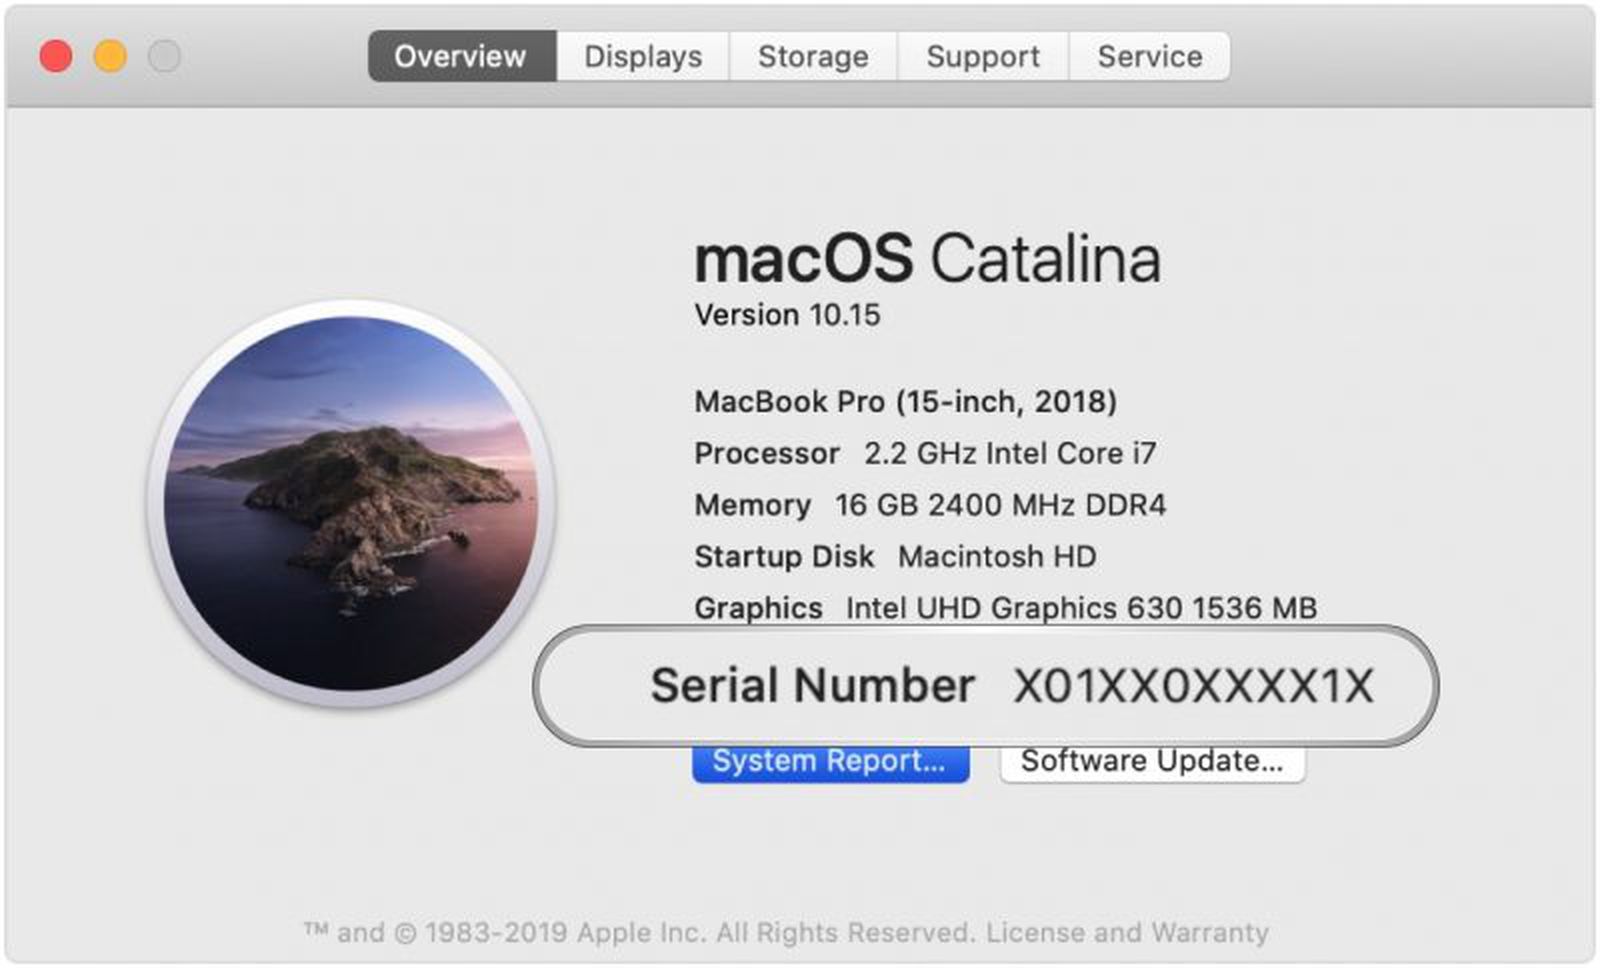 eyetv 3 serial number mac